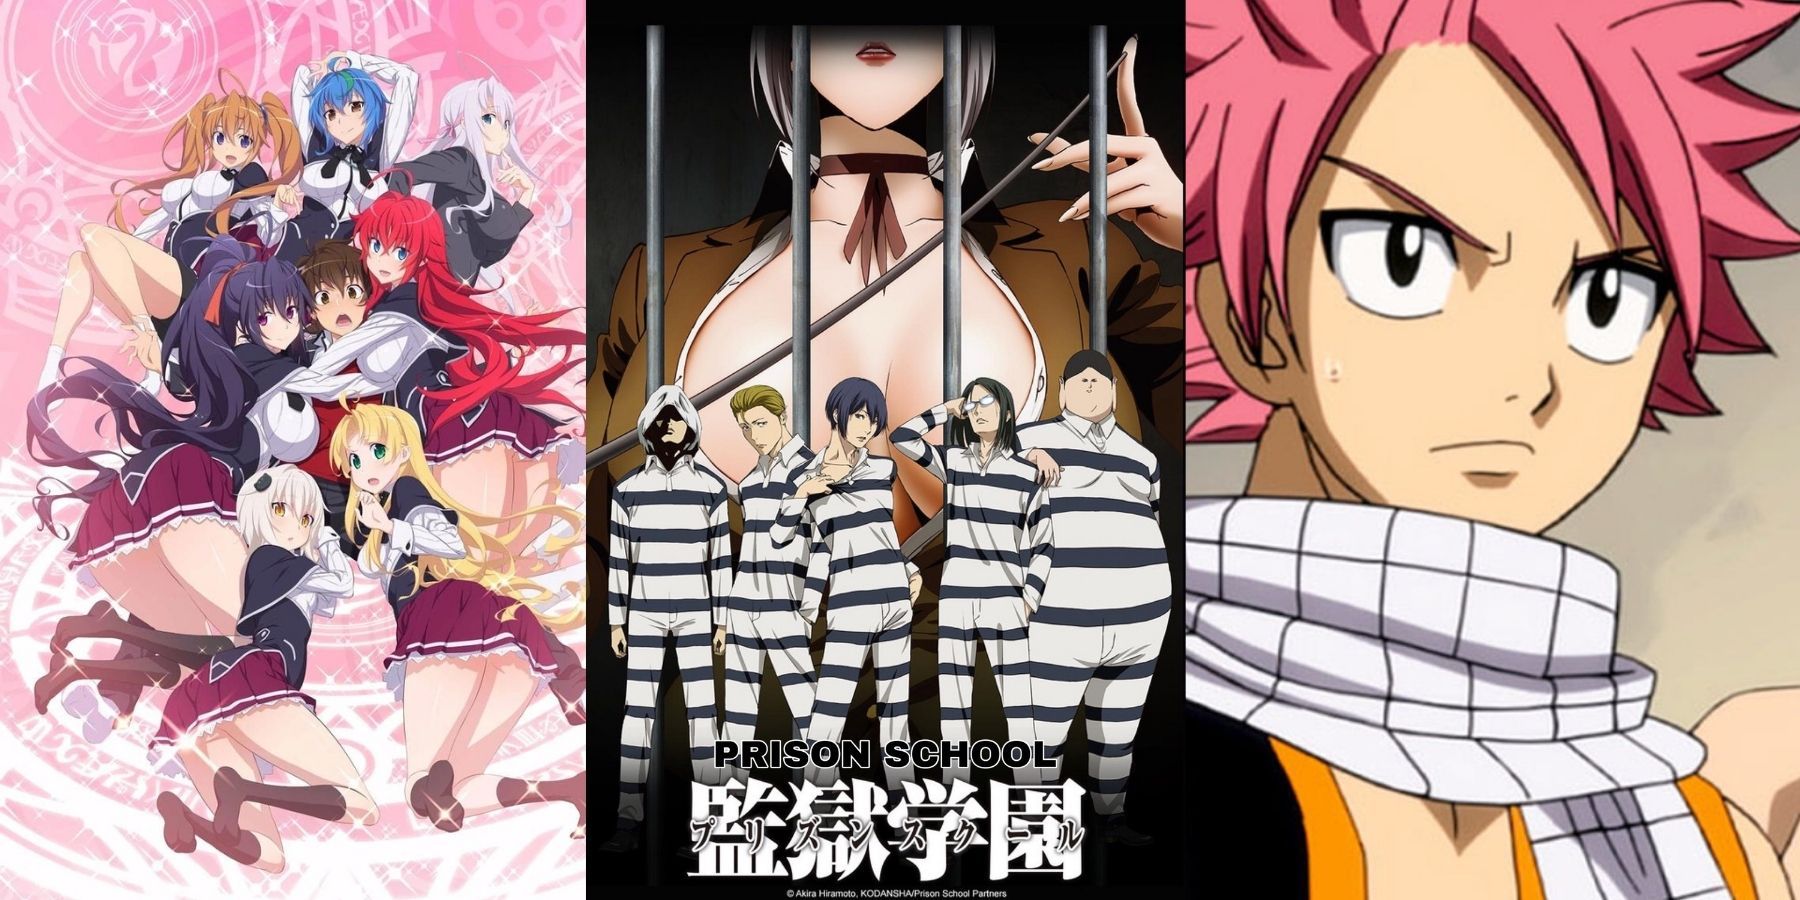 Kamisama Hajimemashita • Kamisama Kiss - Anime of the Week : r/anime